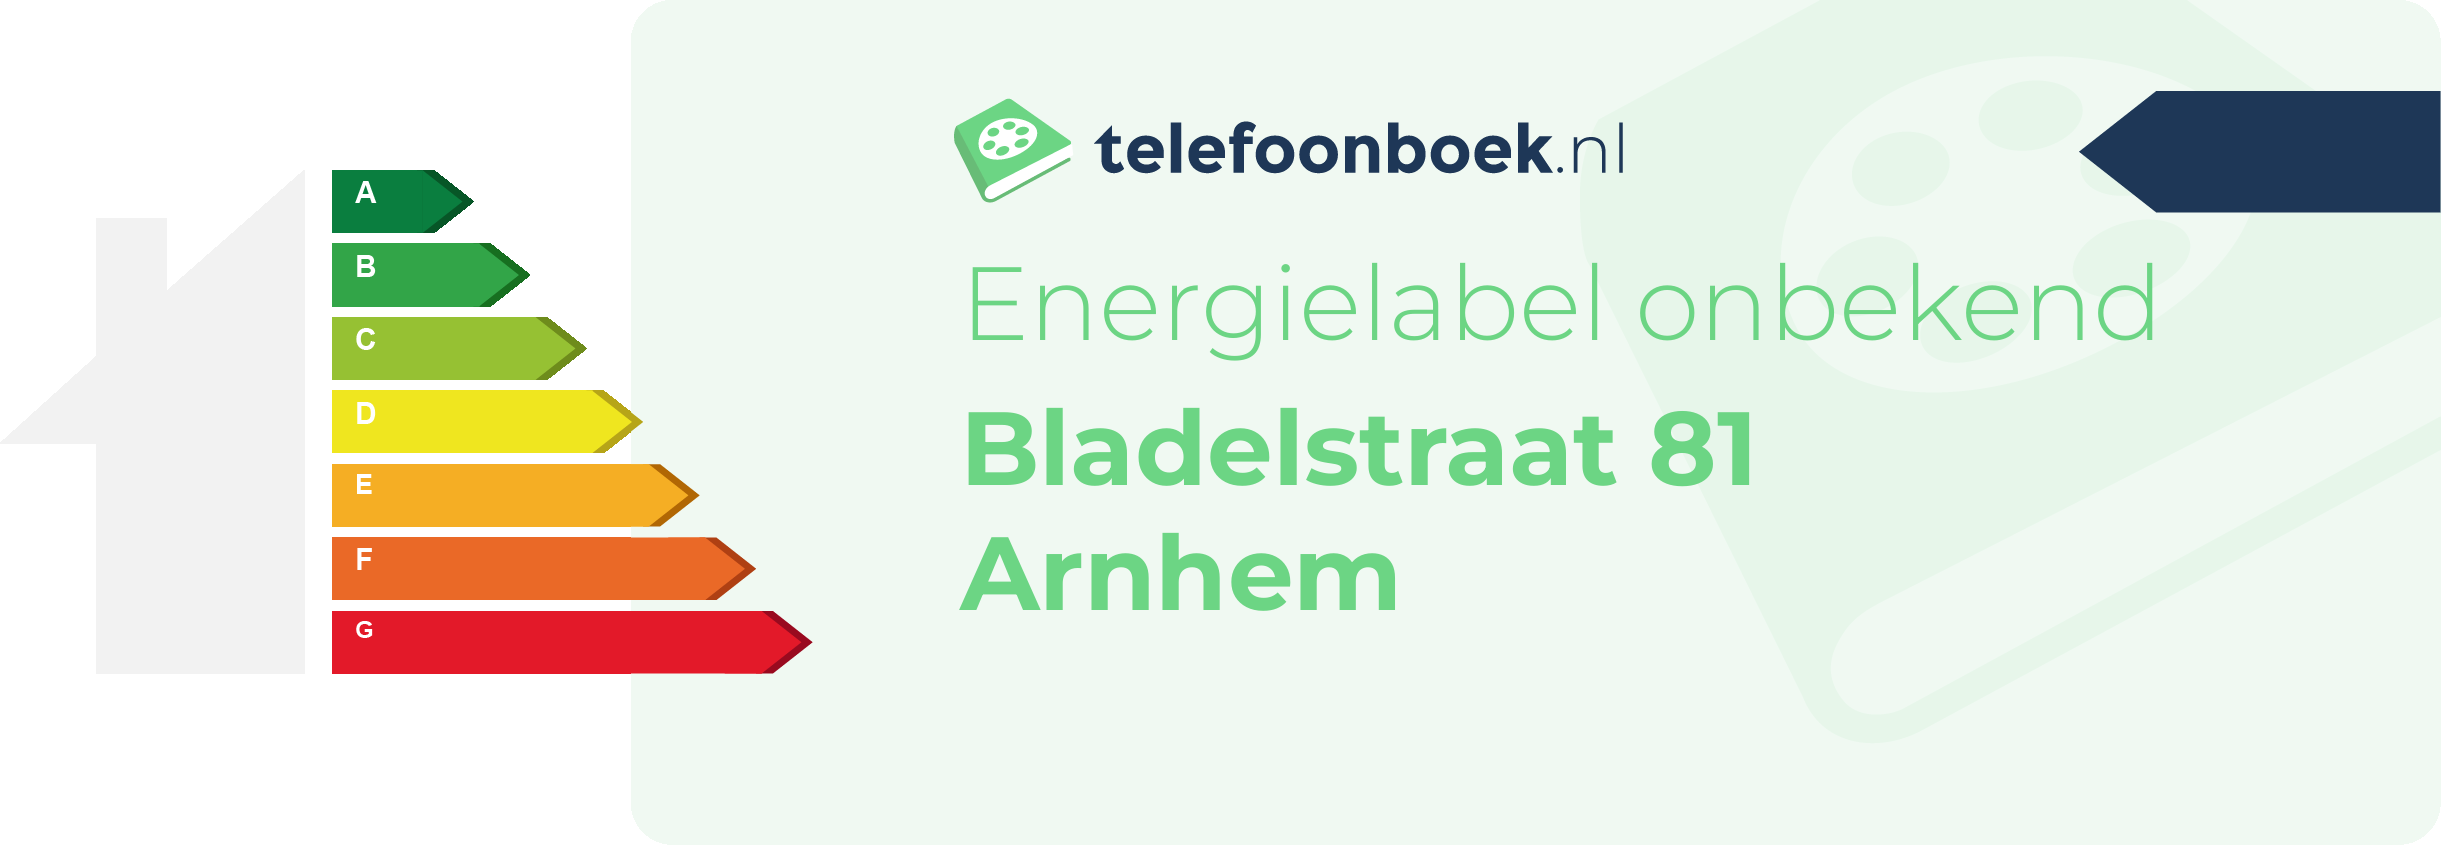 Energielabel Bladelstraat 81 Arnhem